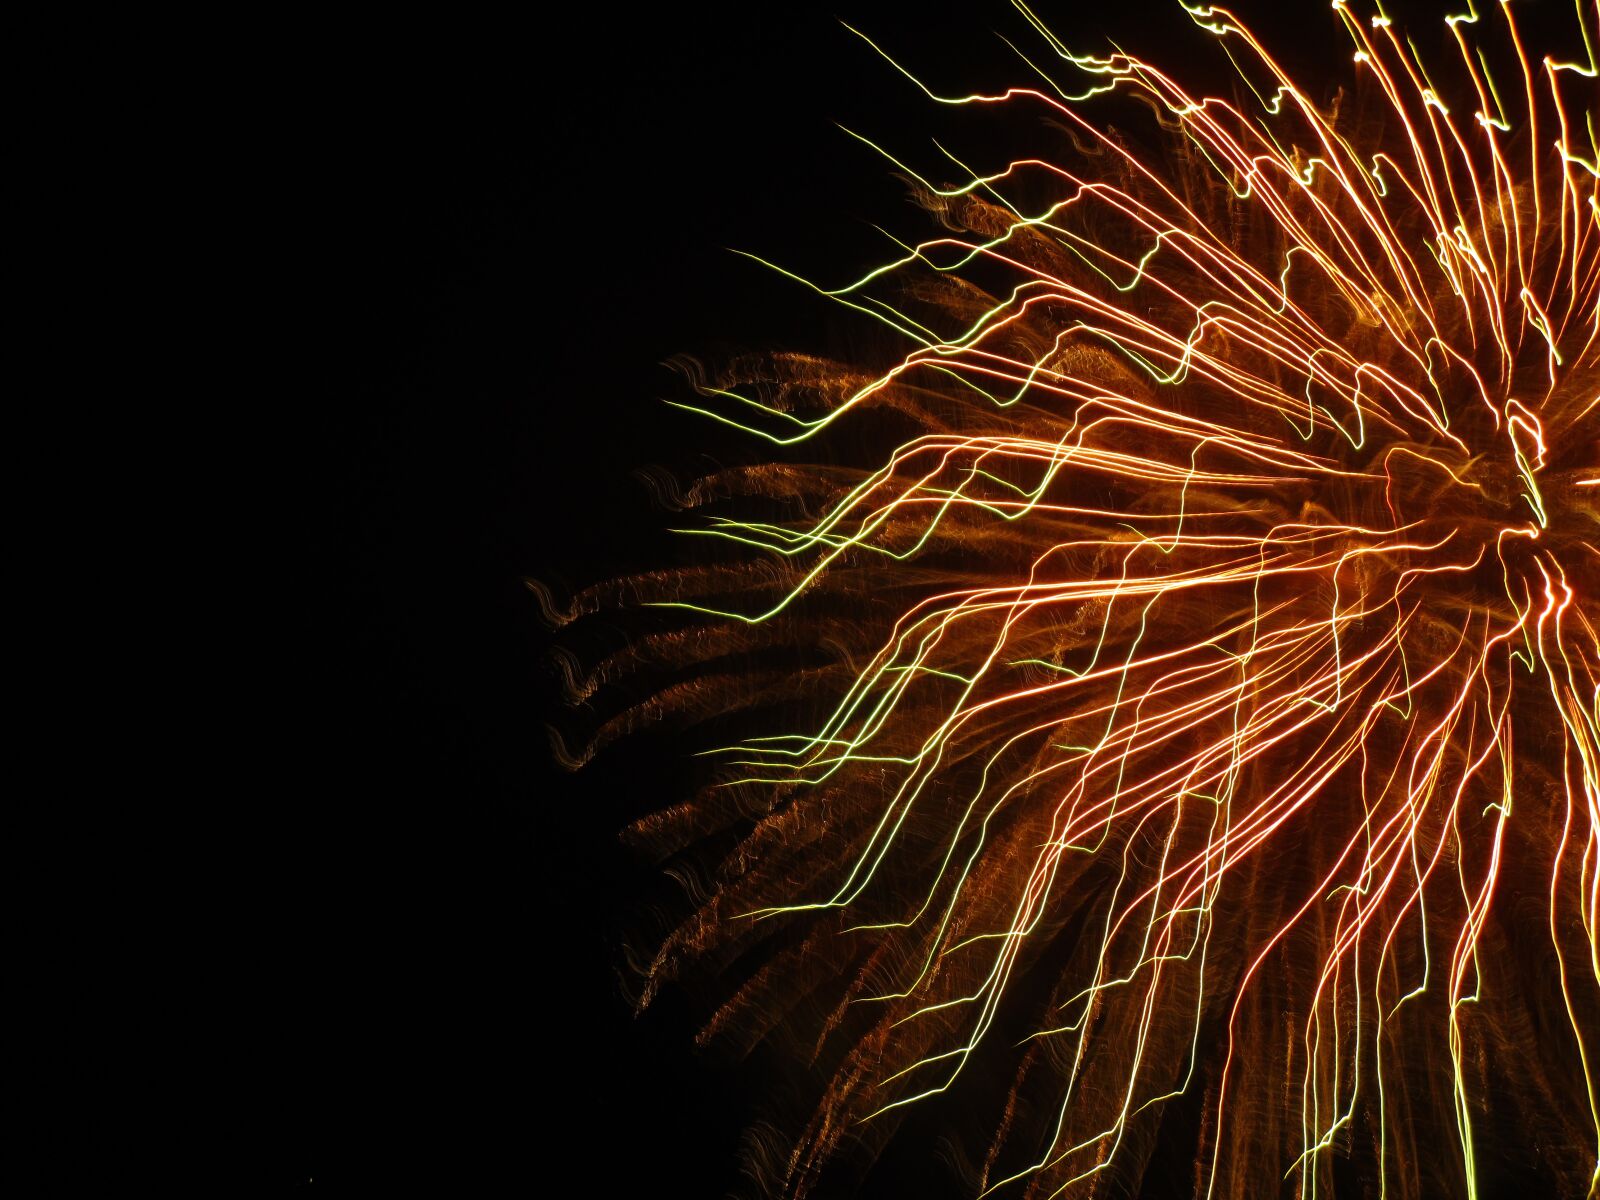 Canon PowerShot ELPH 150 IS (IXUS 155 / IXY 140) sample photo. Fireworks, july, celebration photography